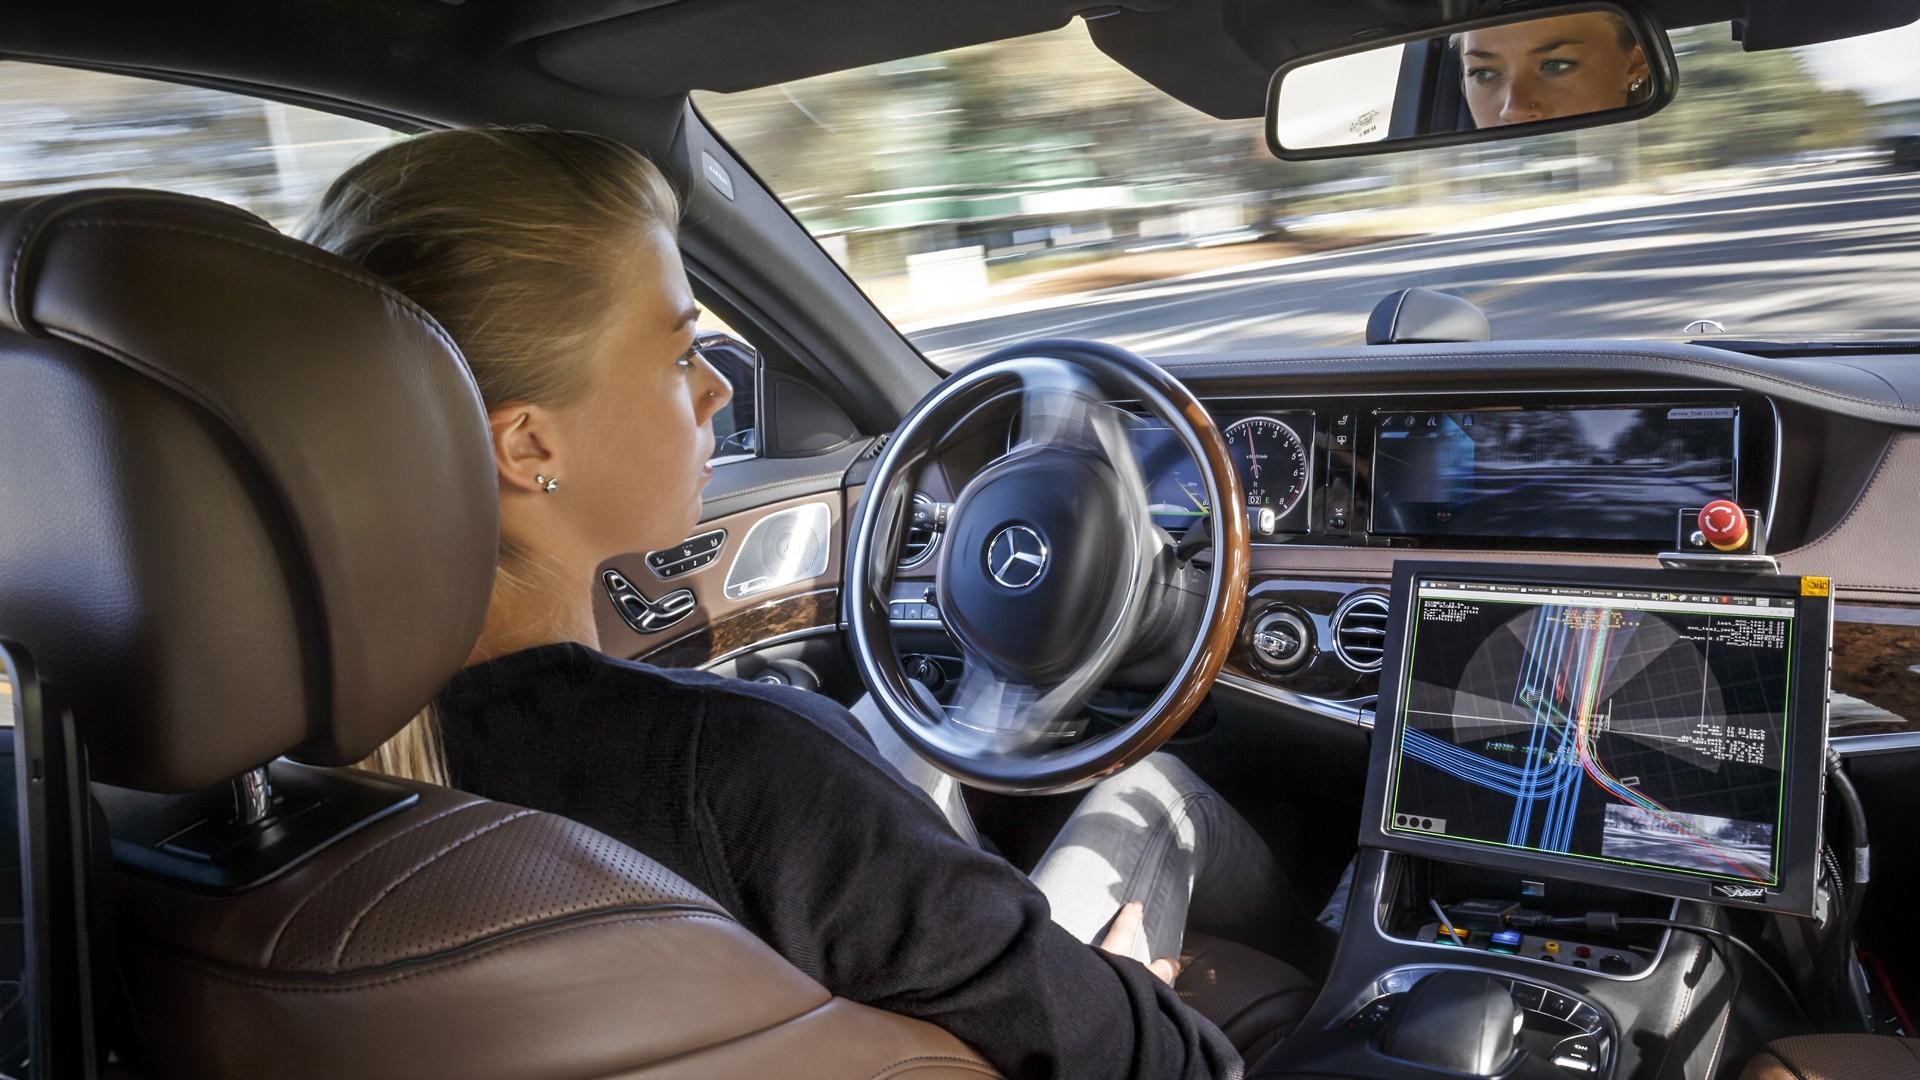 Cinture di sicurezza: saranno obbligatorie sulle auto a guida autonoma?